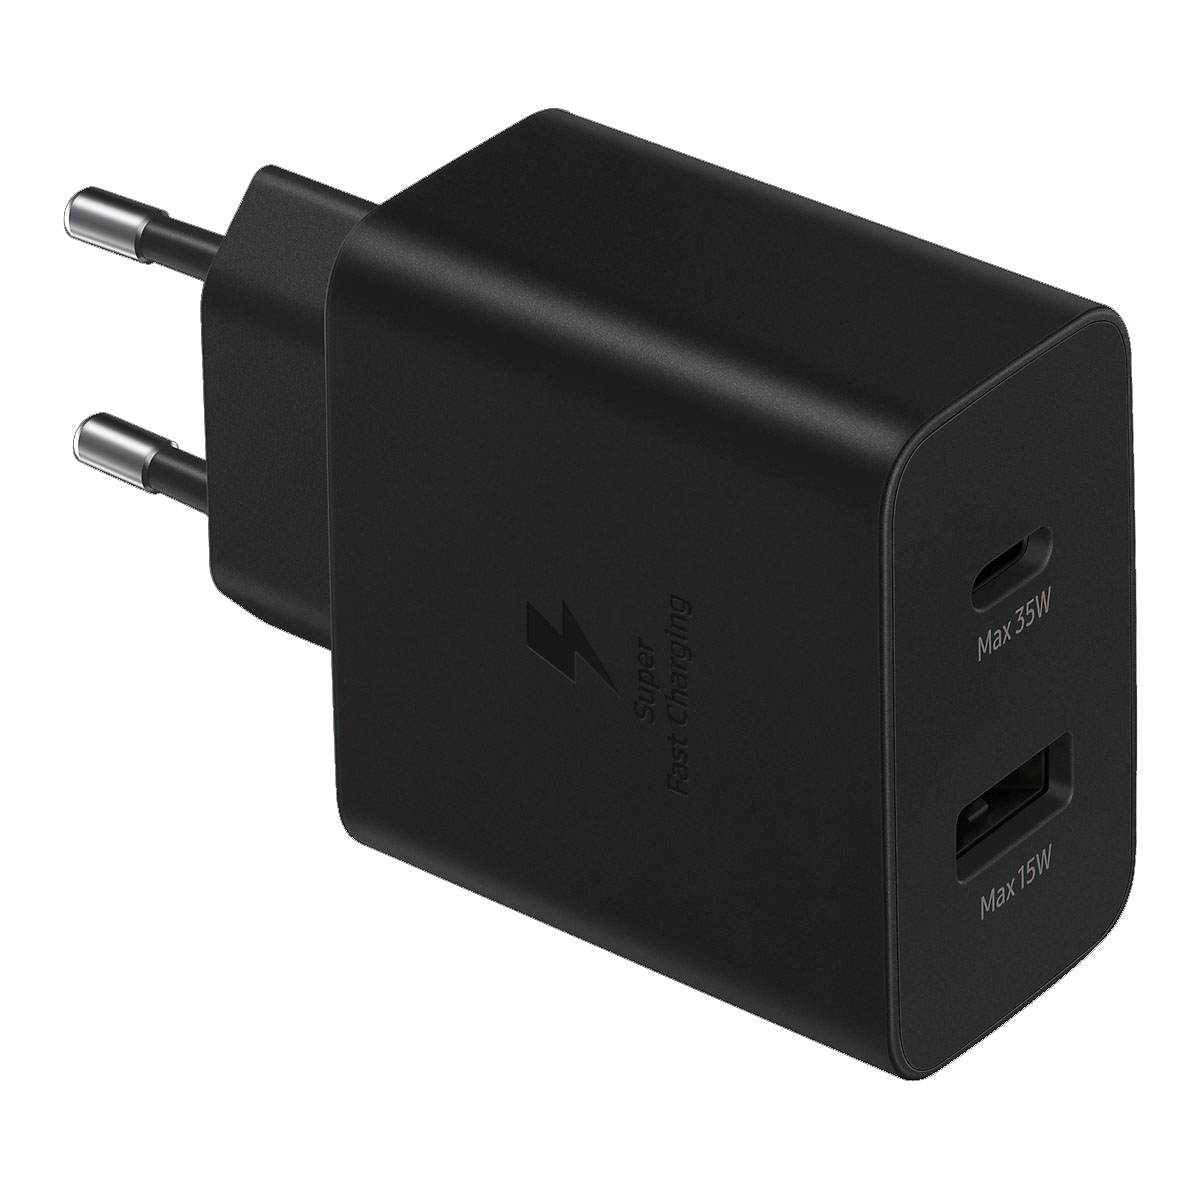 СЗУ (Сетевое зарядное устройство) EP-TA220, 35W, 1 USB Type C, 1 USB, цвет черный